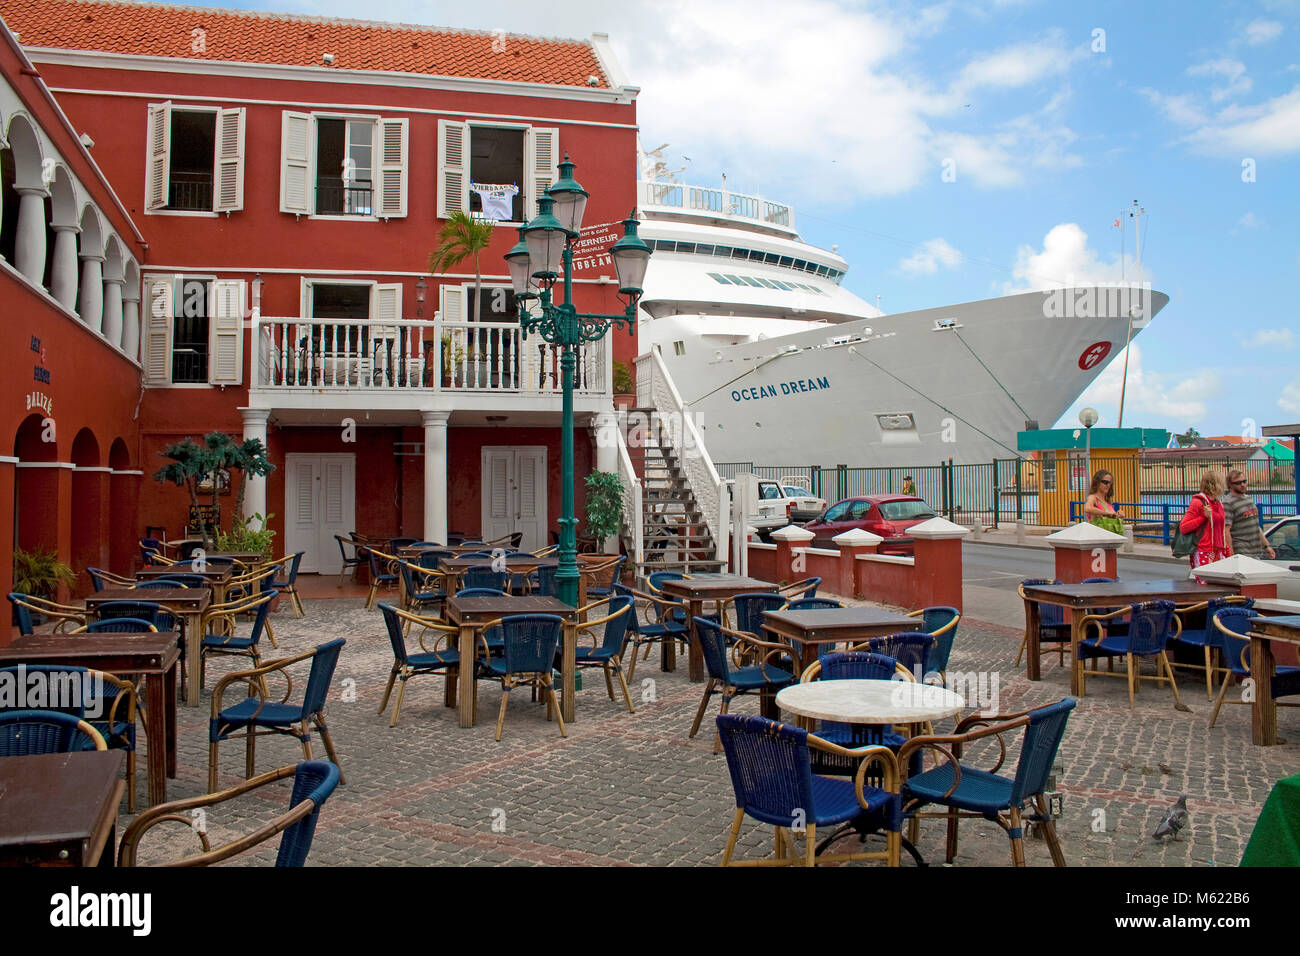 Buque de crucero 'Ocean Dream' en Sint Anna Baai Otrobanda, distrito, Willemstad, Curazao, Antillas Holandesas, el Caribe Foto de stock